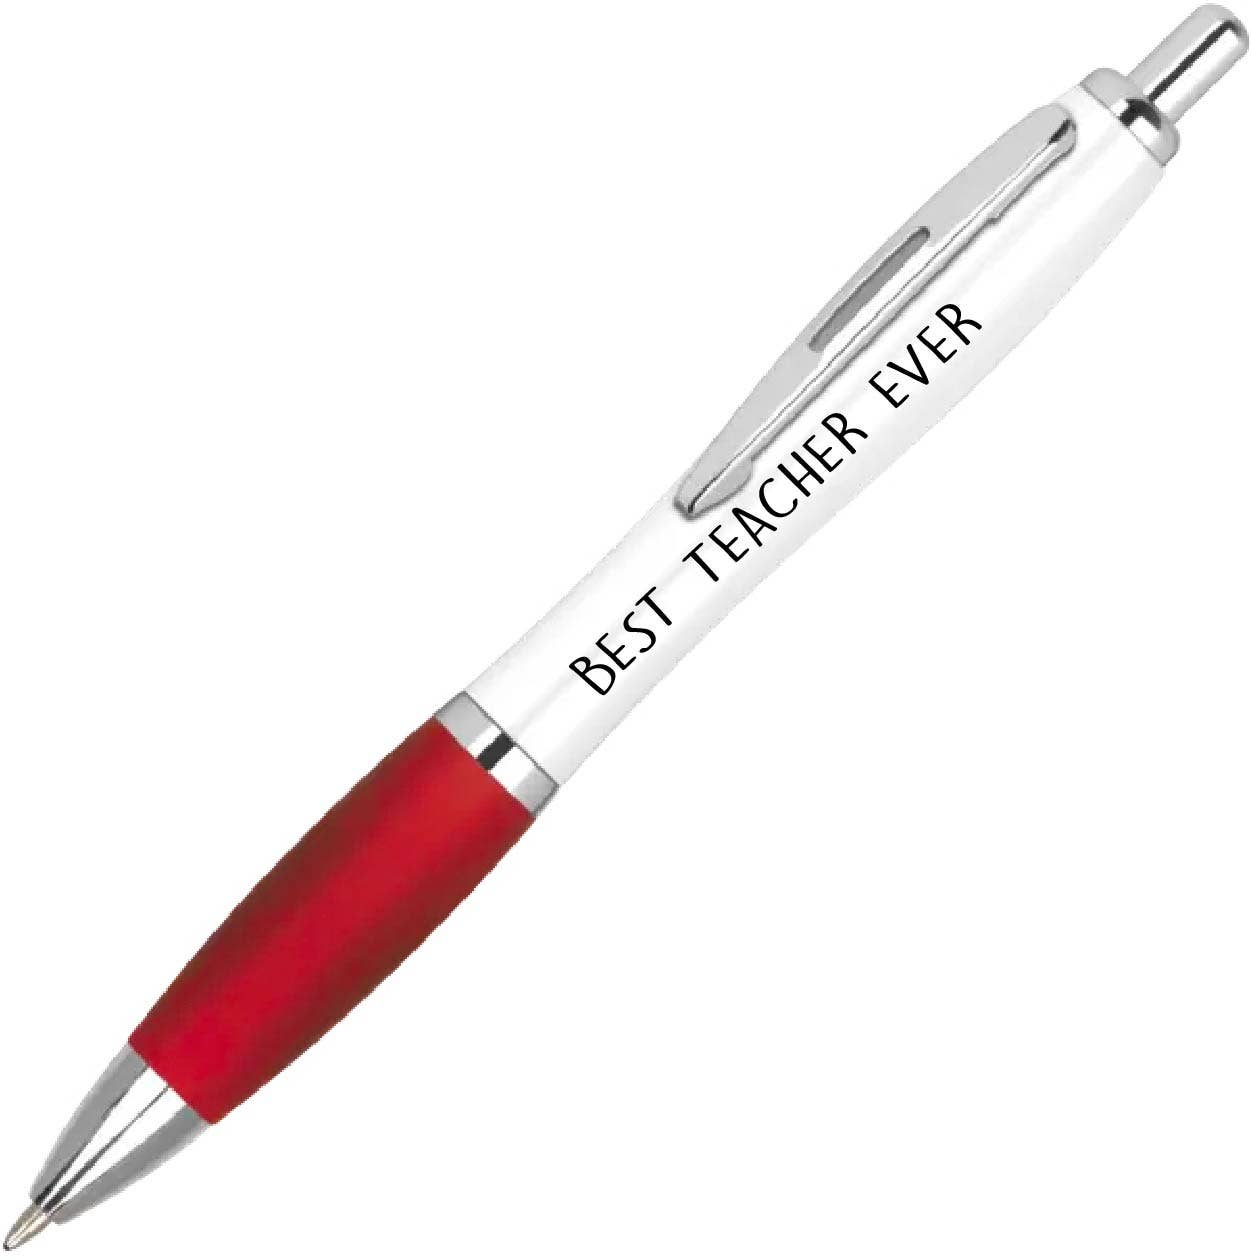 Cheeky Chops Pen best teacher pen